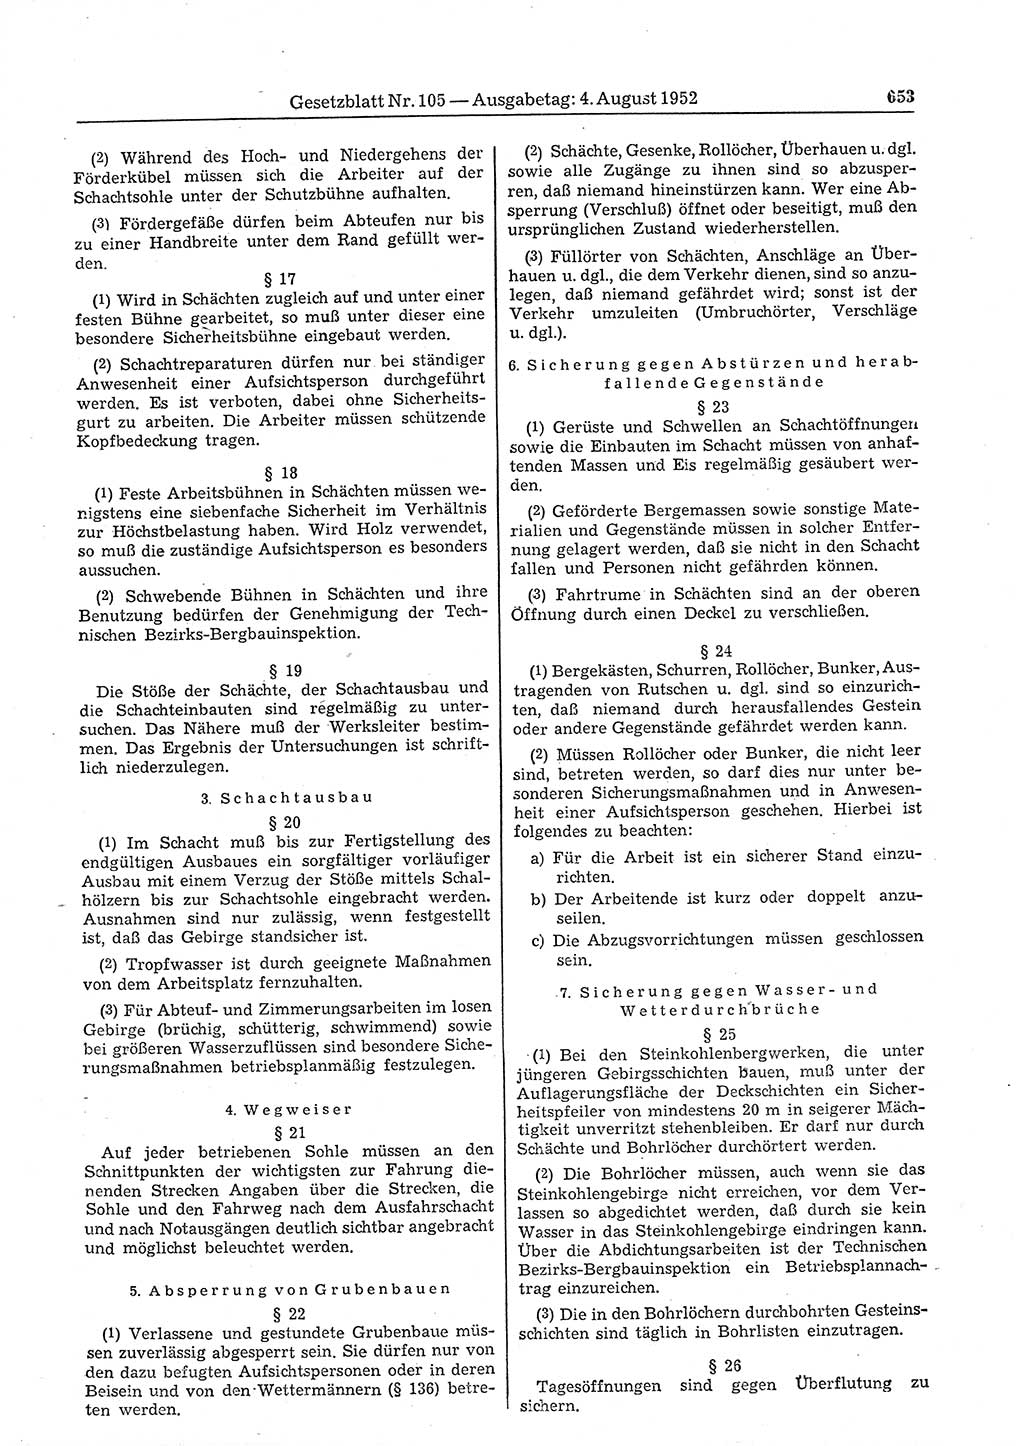 Gesetzblatt (GBl.) der Deutschen Demokratischen Republik (DDR) 1952, Seite 653 (GBl. DDR 1952, S. 653)